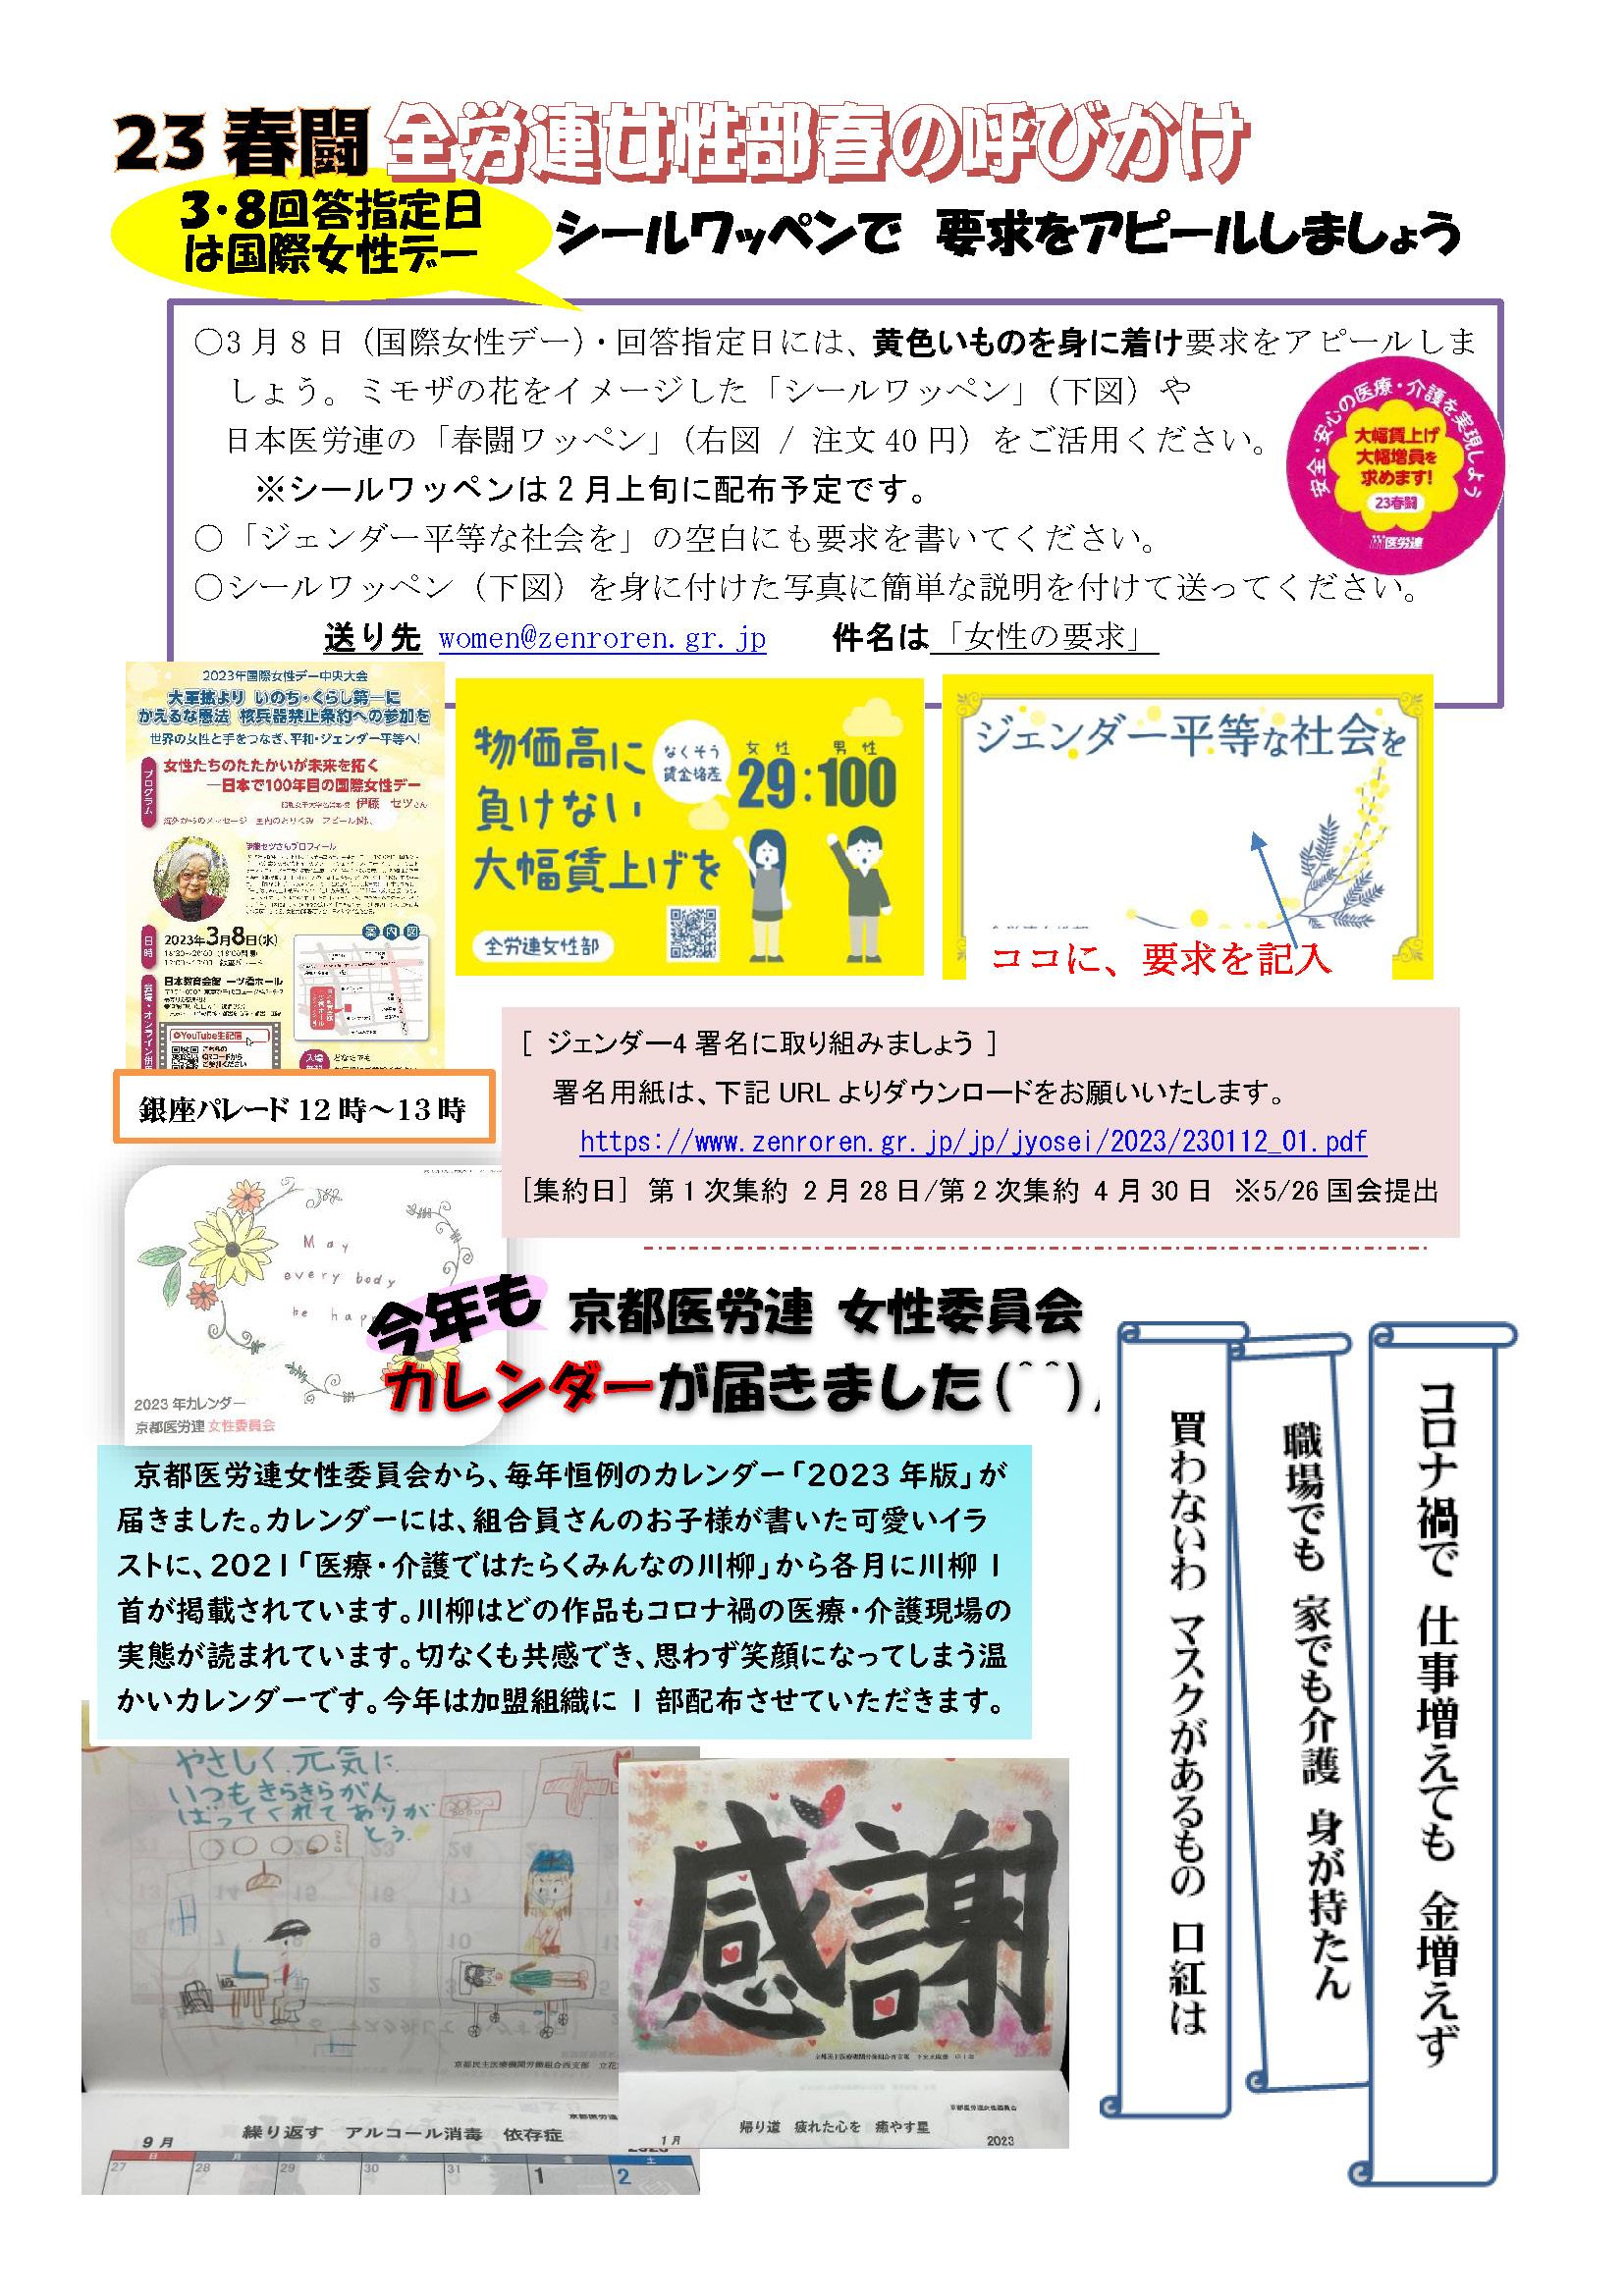 医労連MailNews69号（女性協News8・23春闘で女性の権利勝ち取ろう）_ページ_2.jpg